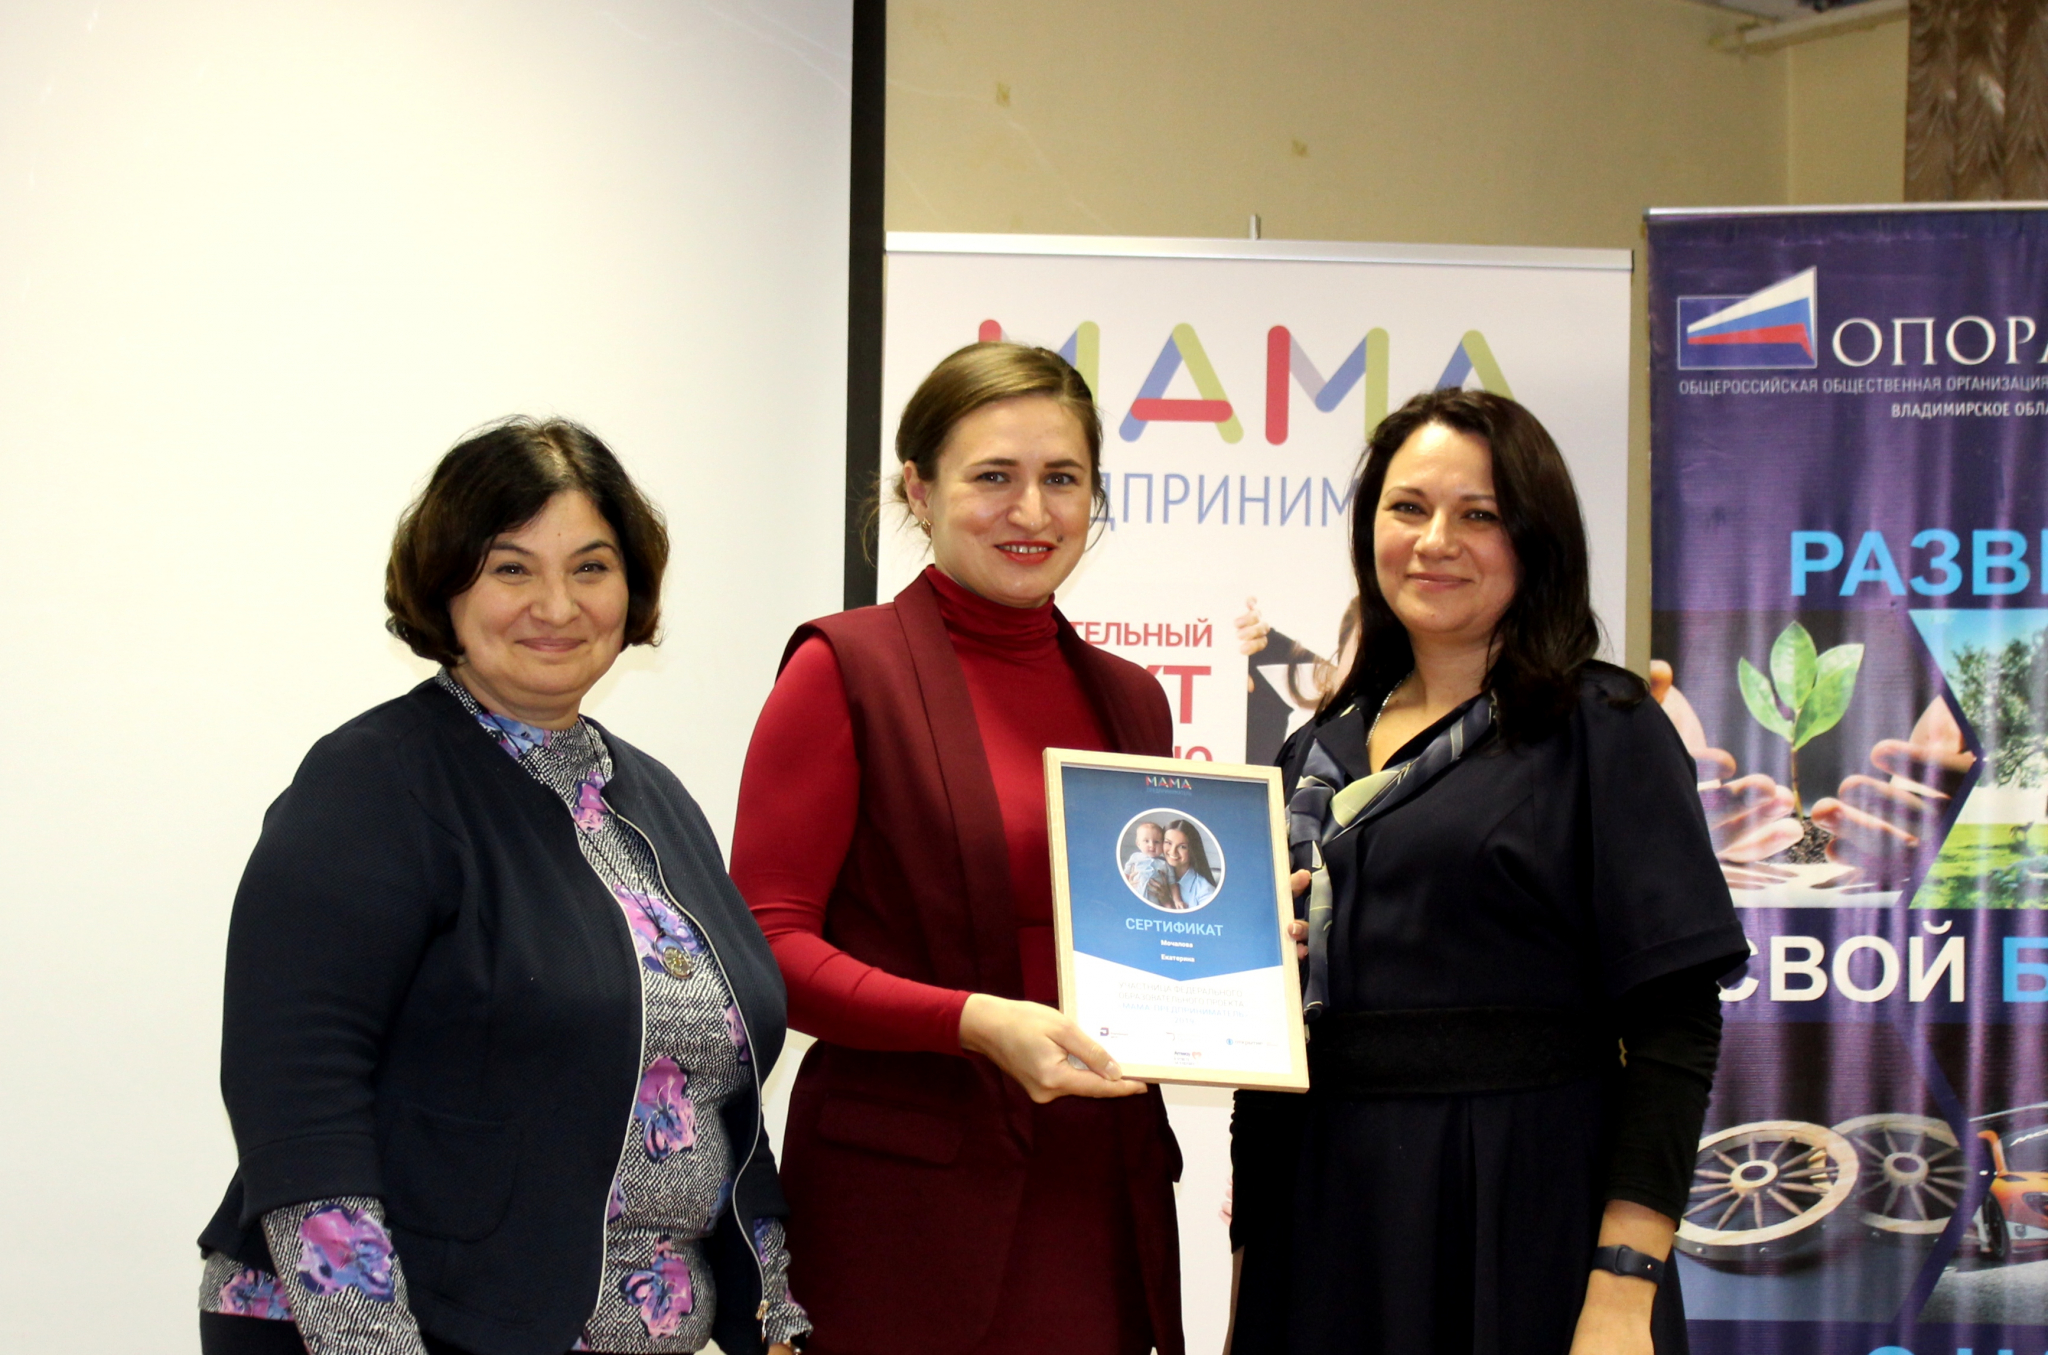 Жительница Владимира выиграла 100 000 руб в проекте "Мама-предприниматель"